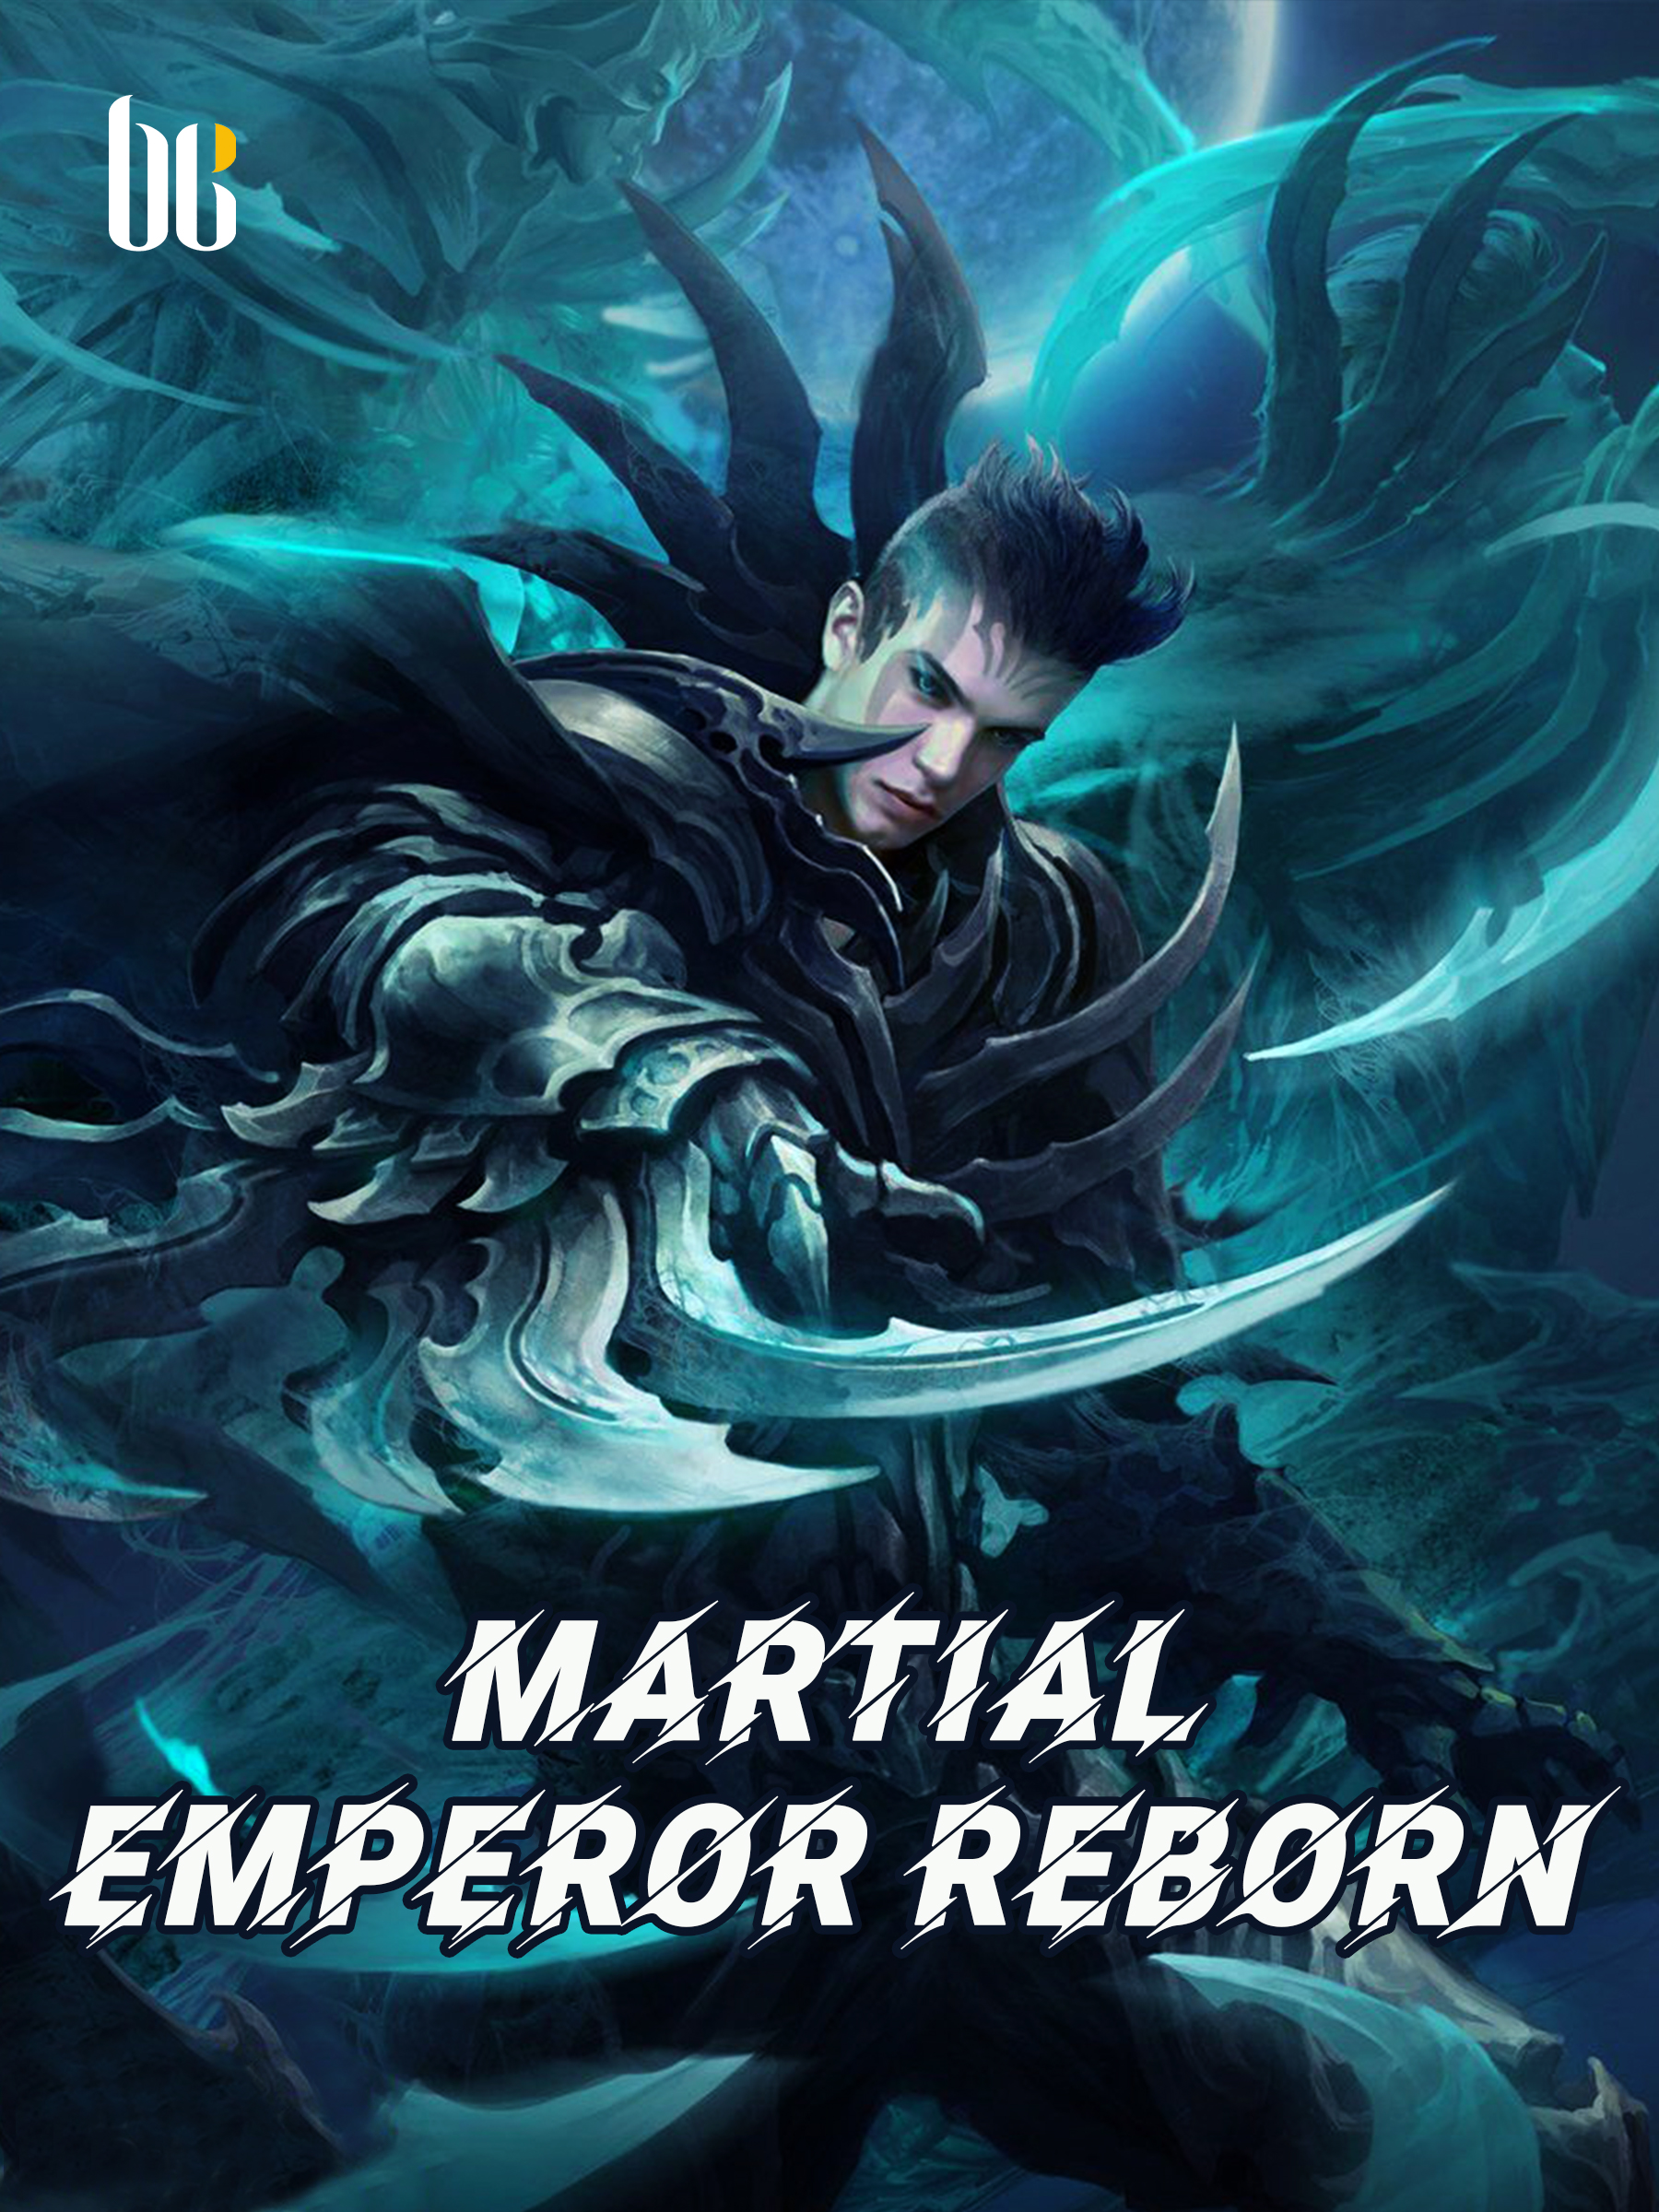 The Reborn Urban Immortal Emperor: Reborn Anti Wuxia Hero Vol 1 by